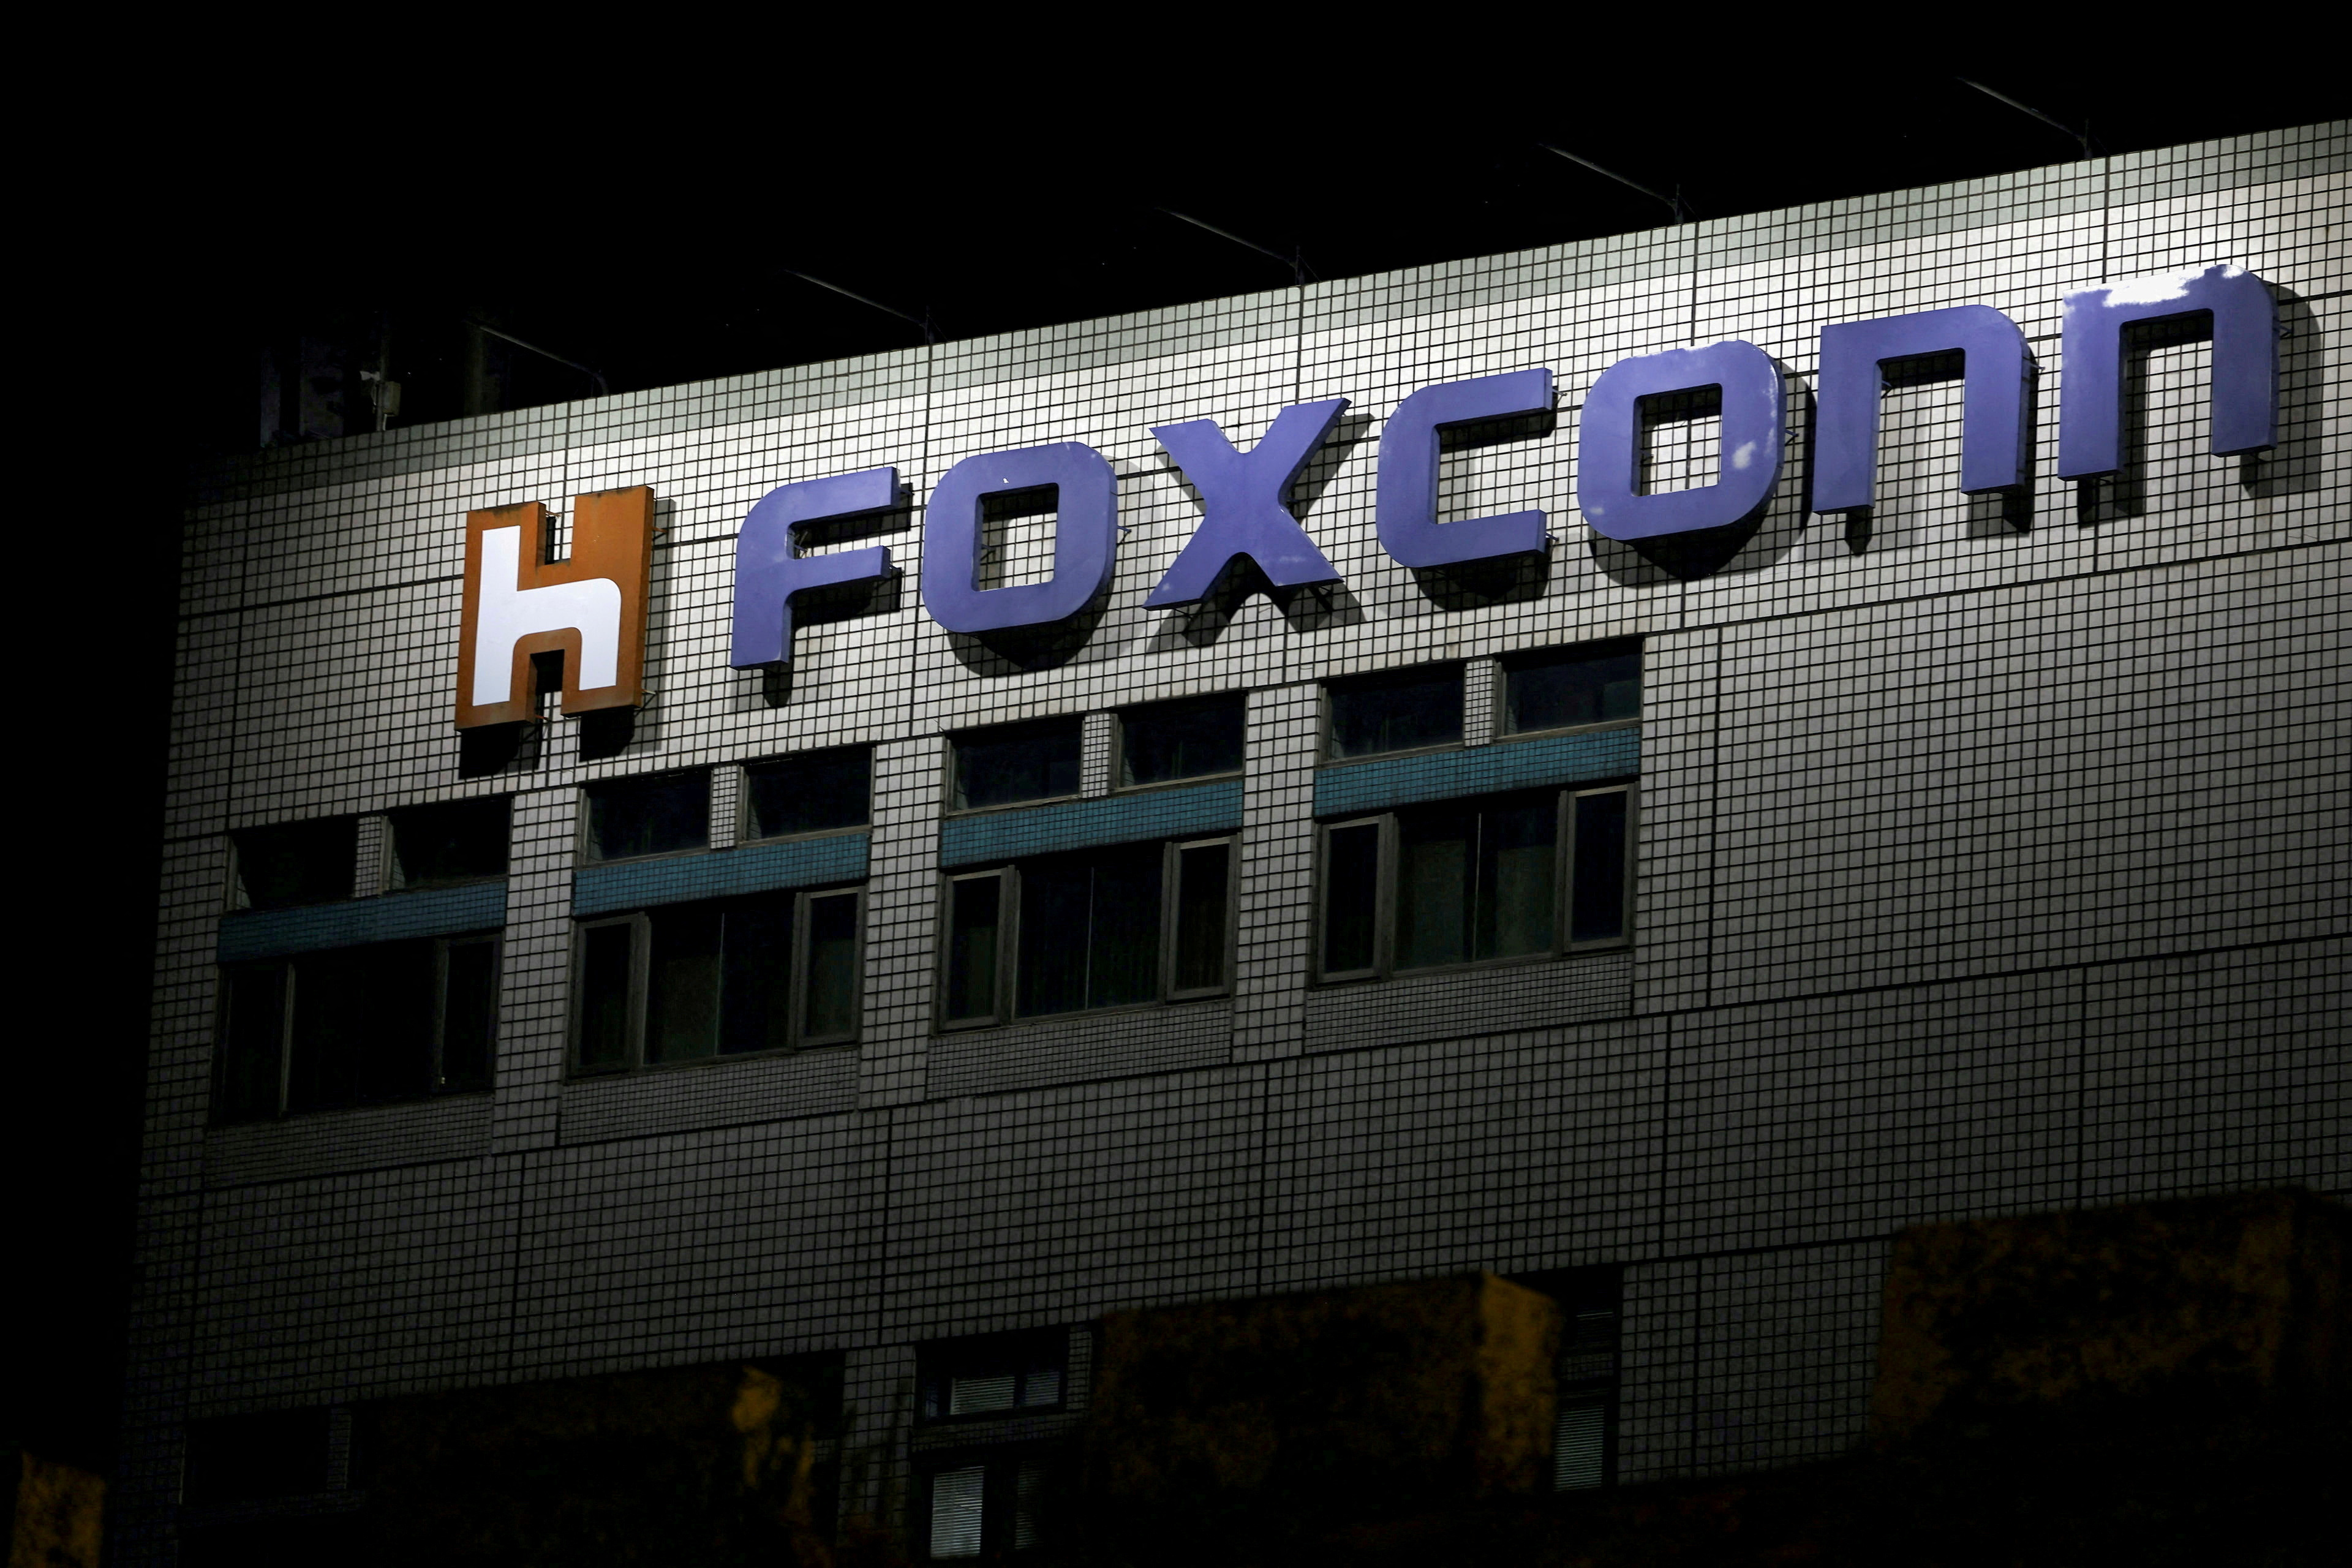 Le logo de Foxconn est visible à l'extérieur du bâtiment d'une entreprise à Taipei